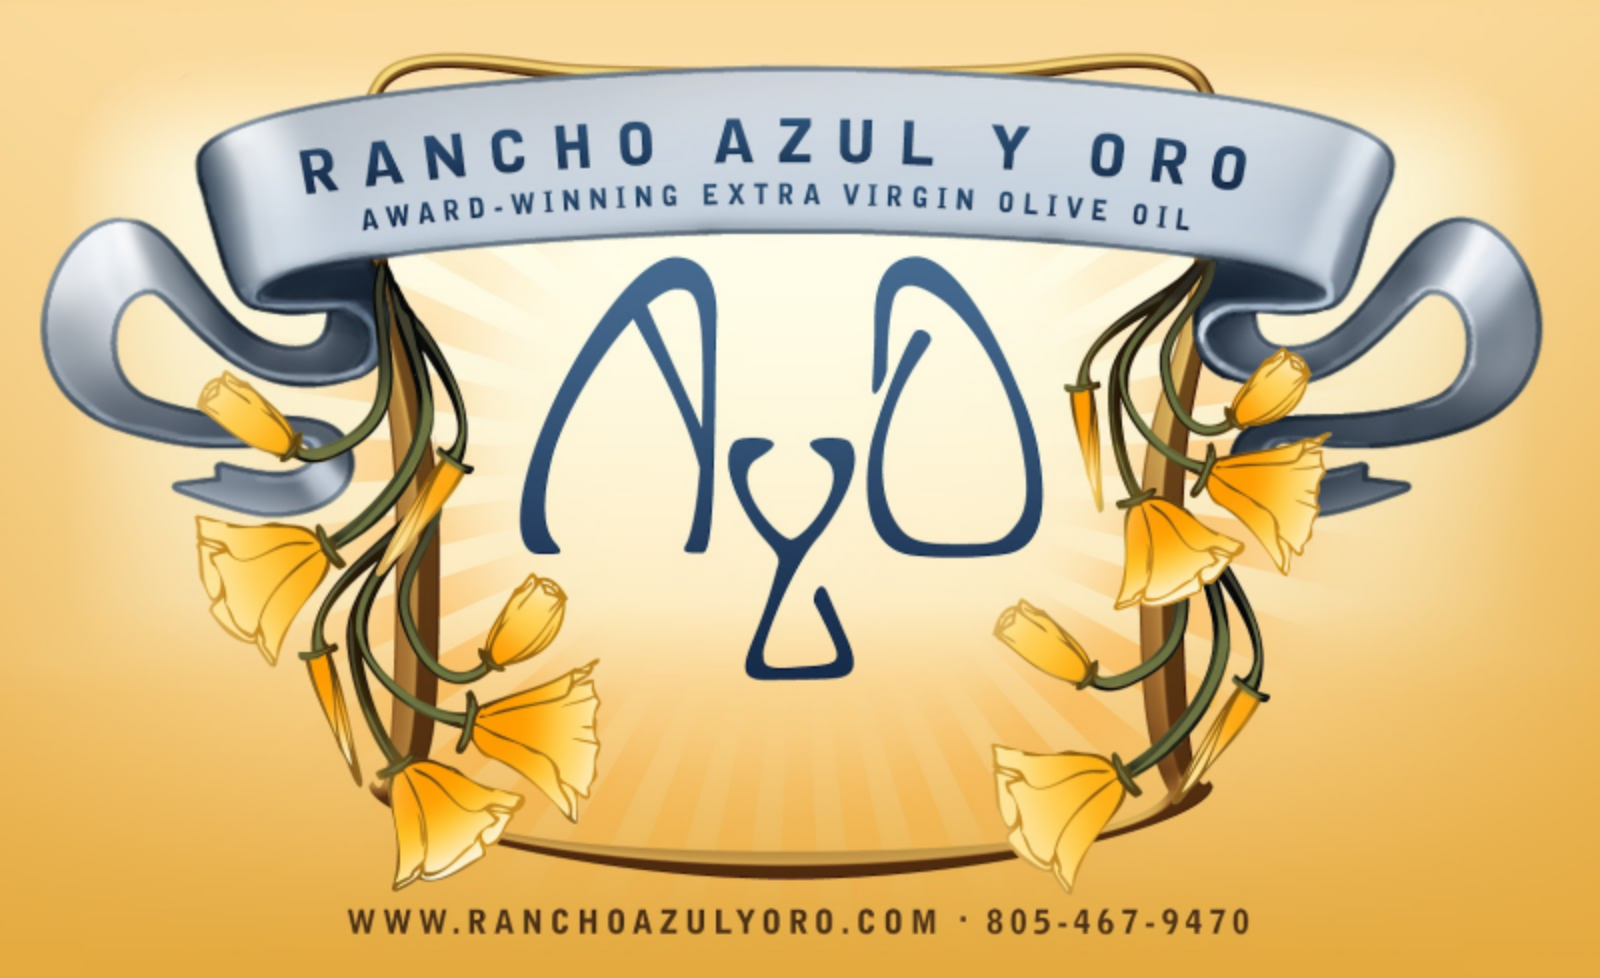 Rancho Azul y Oro